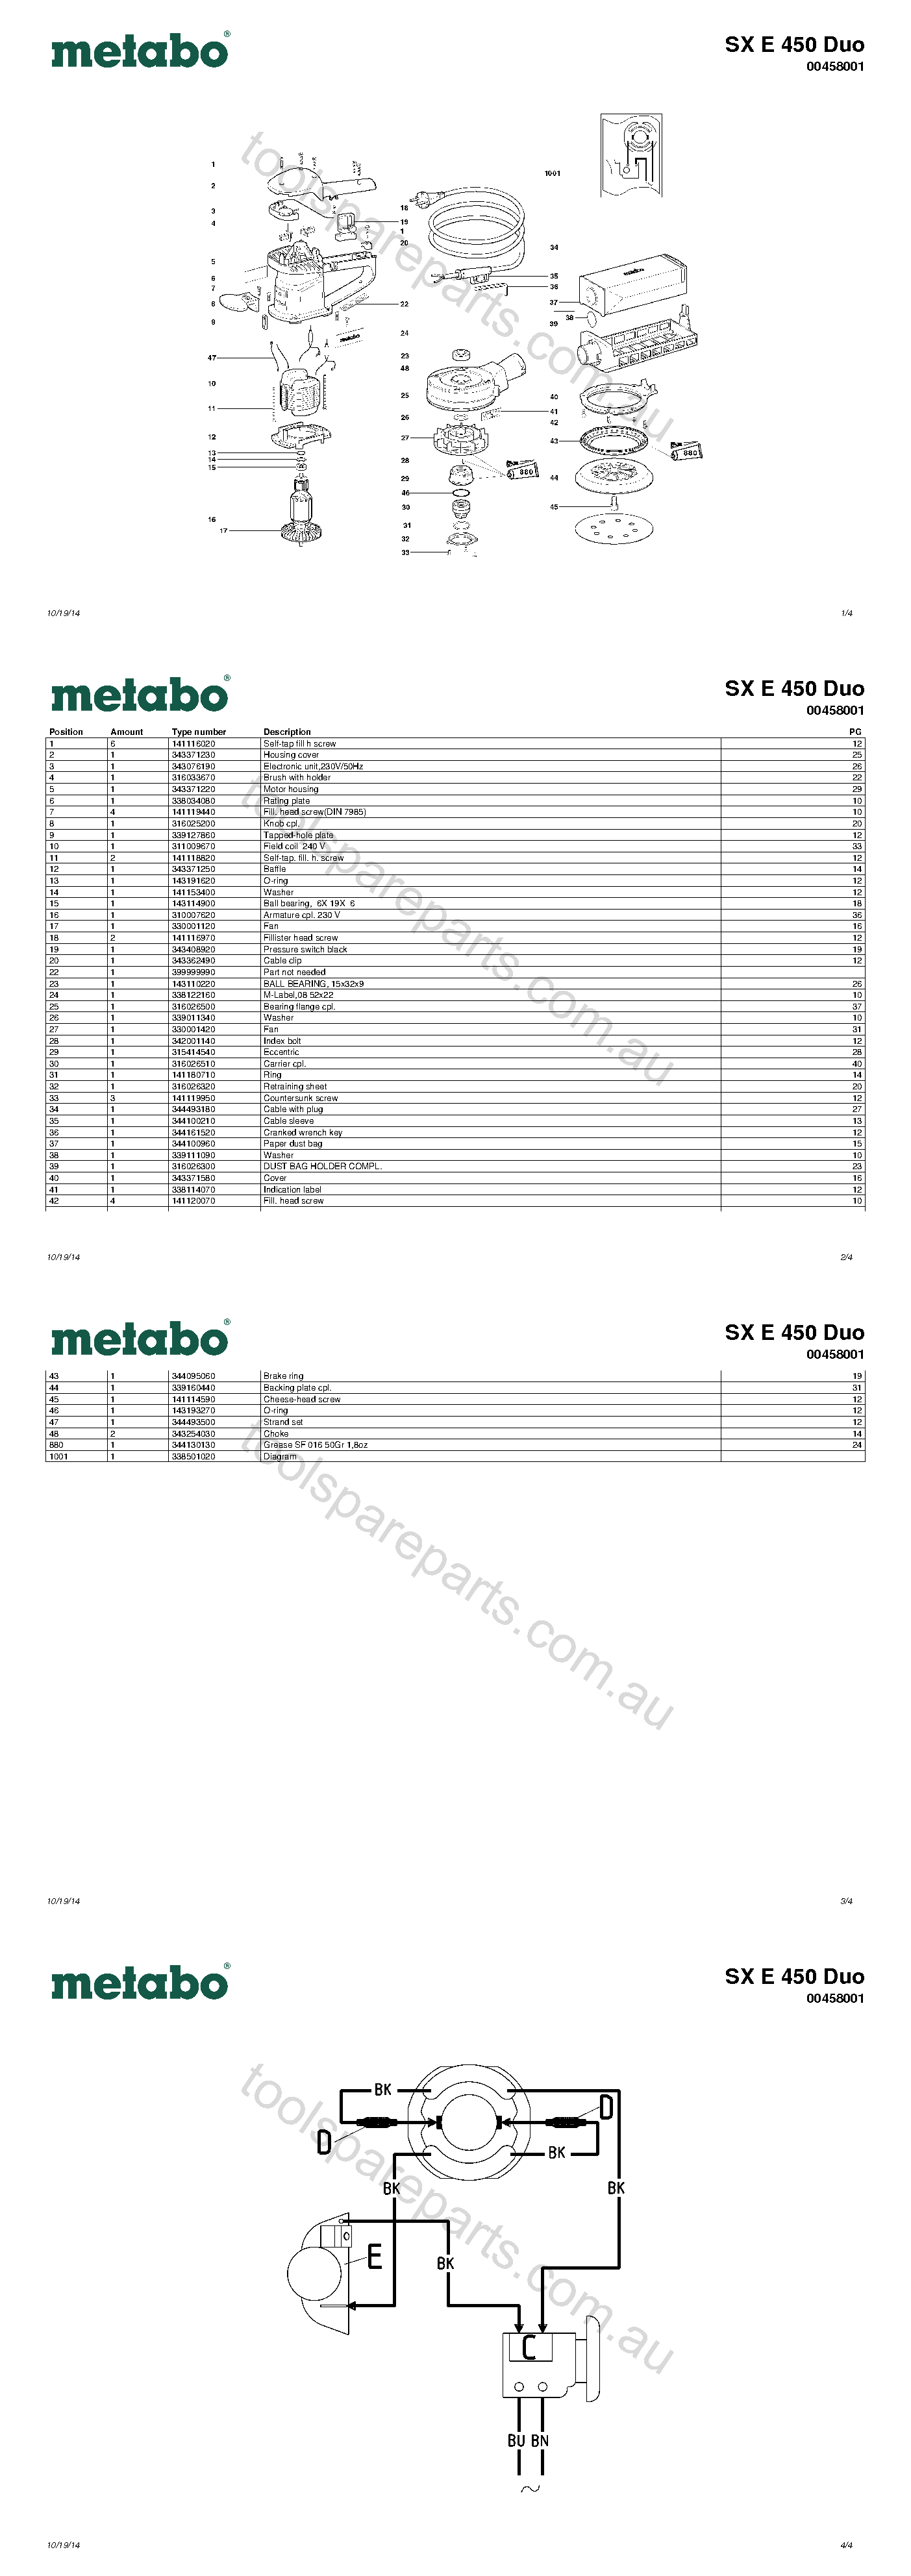 Metabo SX E 450 Duo 00458001  Diagram 1